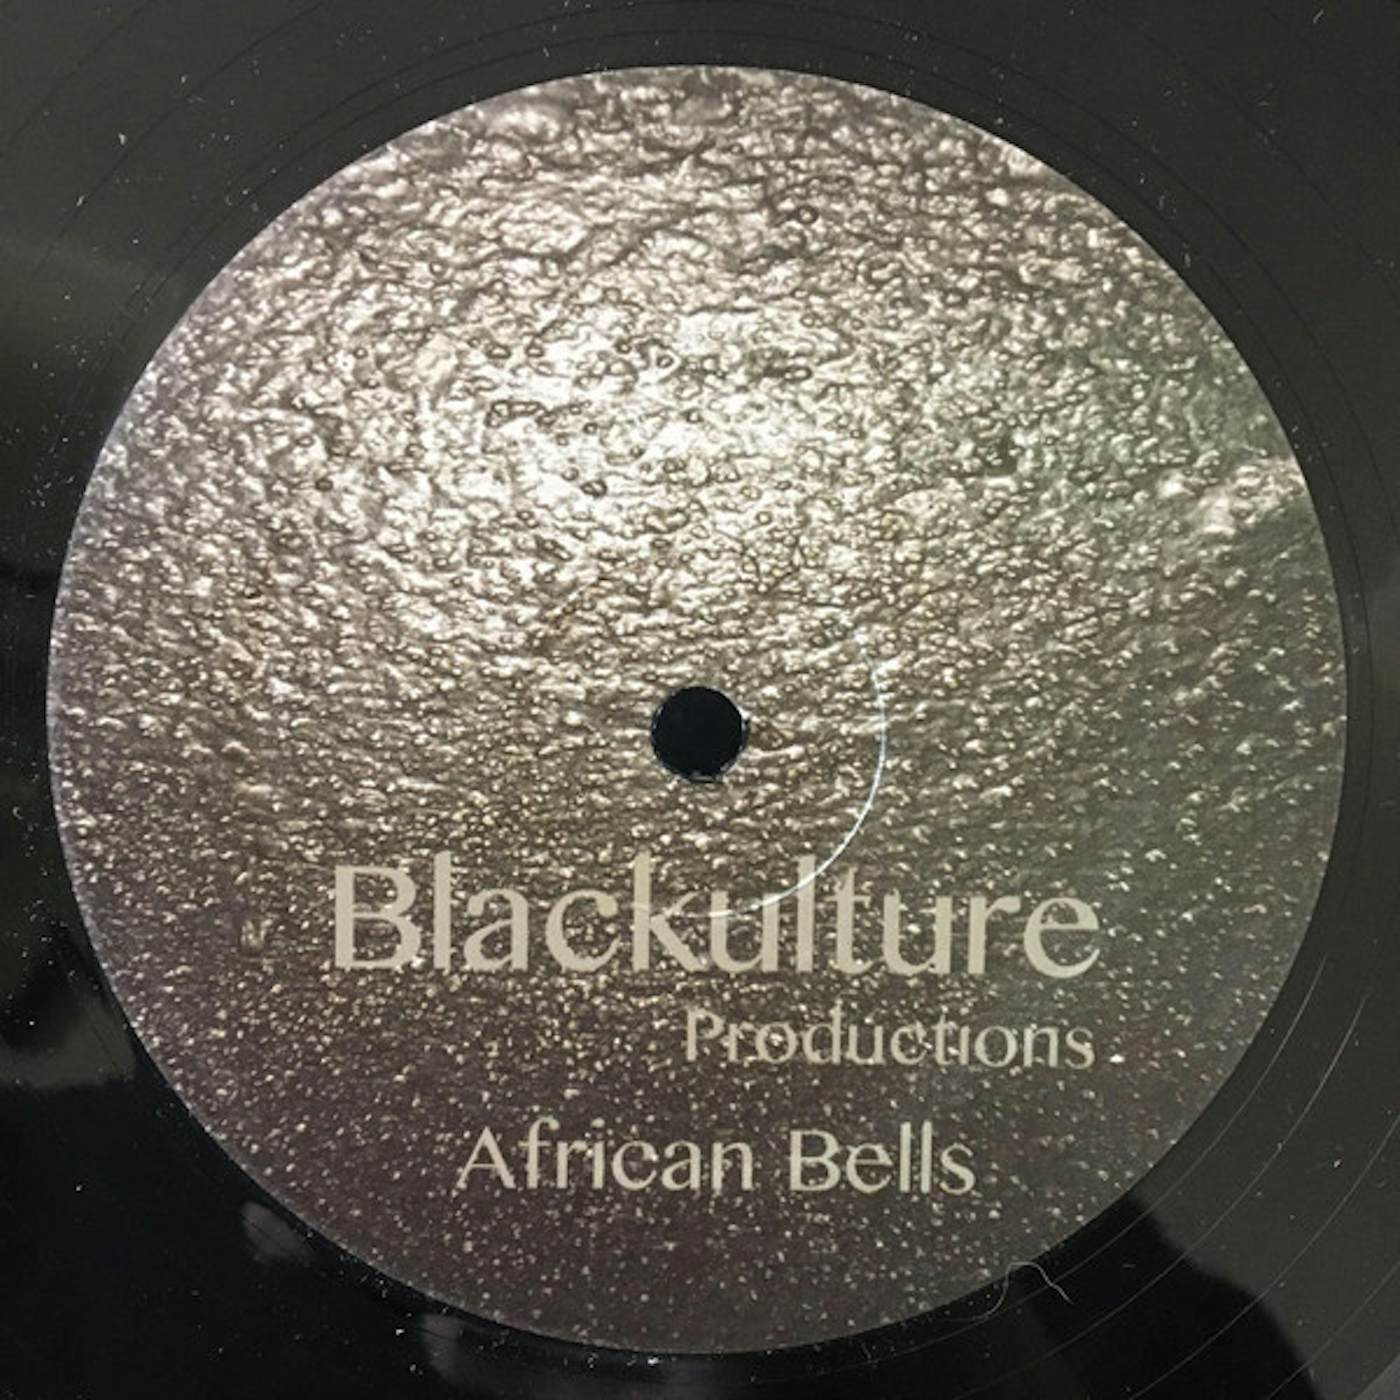 Blackulture Productions African Bells Vinyl Record